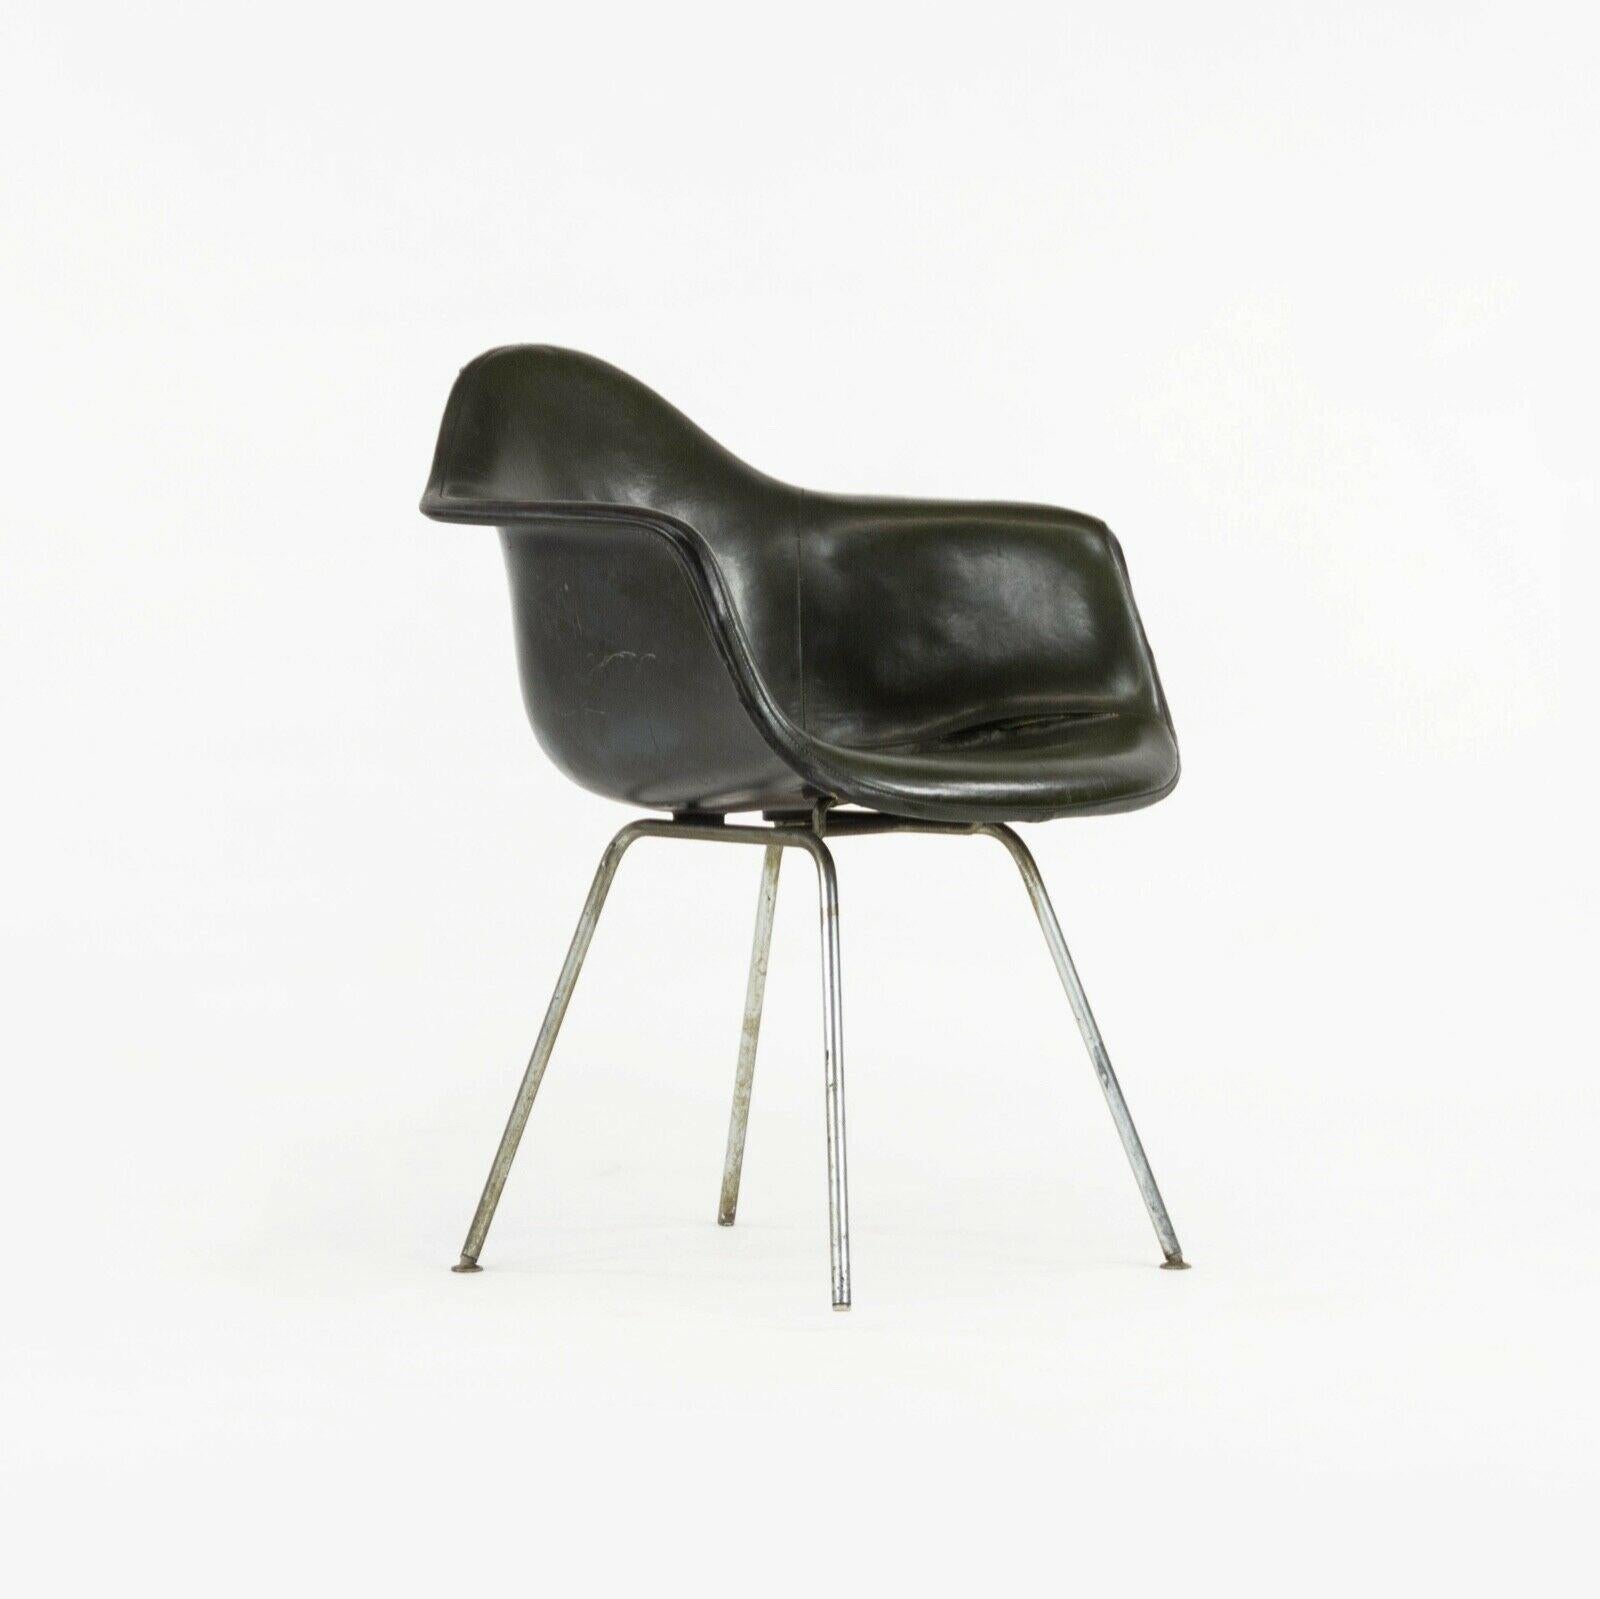 Nous proposons à la vente une chaise de salle à manger / chaise d'appoint Herman Miller Eames DAX datant de 1959, avec un pad amovible en Naugahyde vert foncé d'origine et une coque en fibre de verre (avec dossier peint). Le DAX est un design